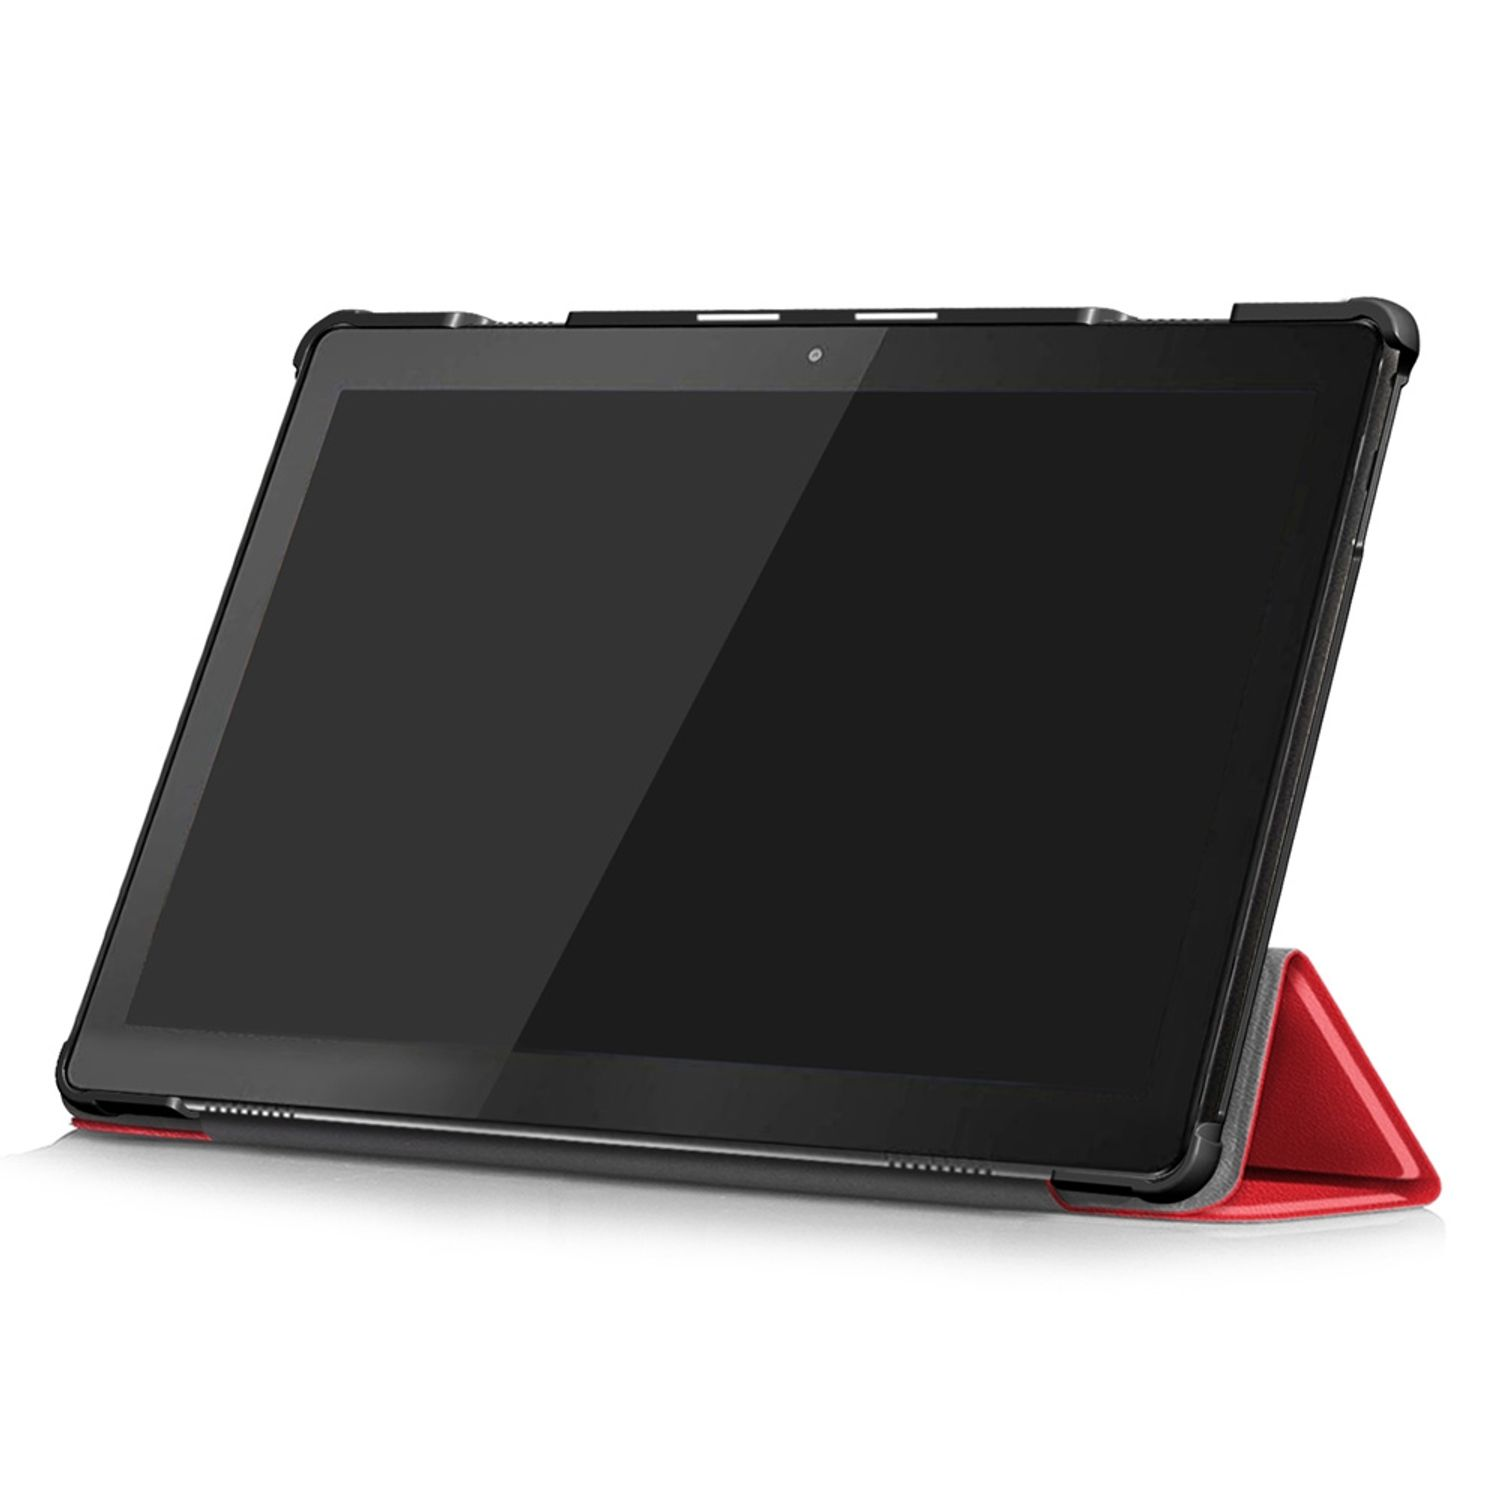 Kunstleder, Lenovo für KÖNIG DESIGN Bookcover Rot Tablet-Hülle Tablet-Hülle